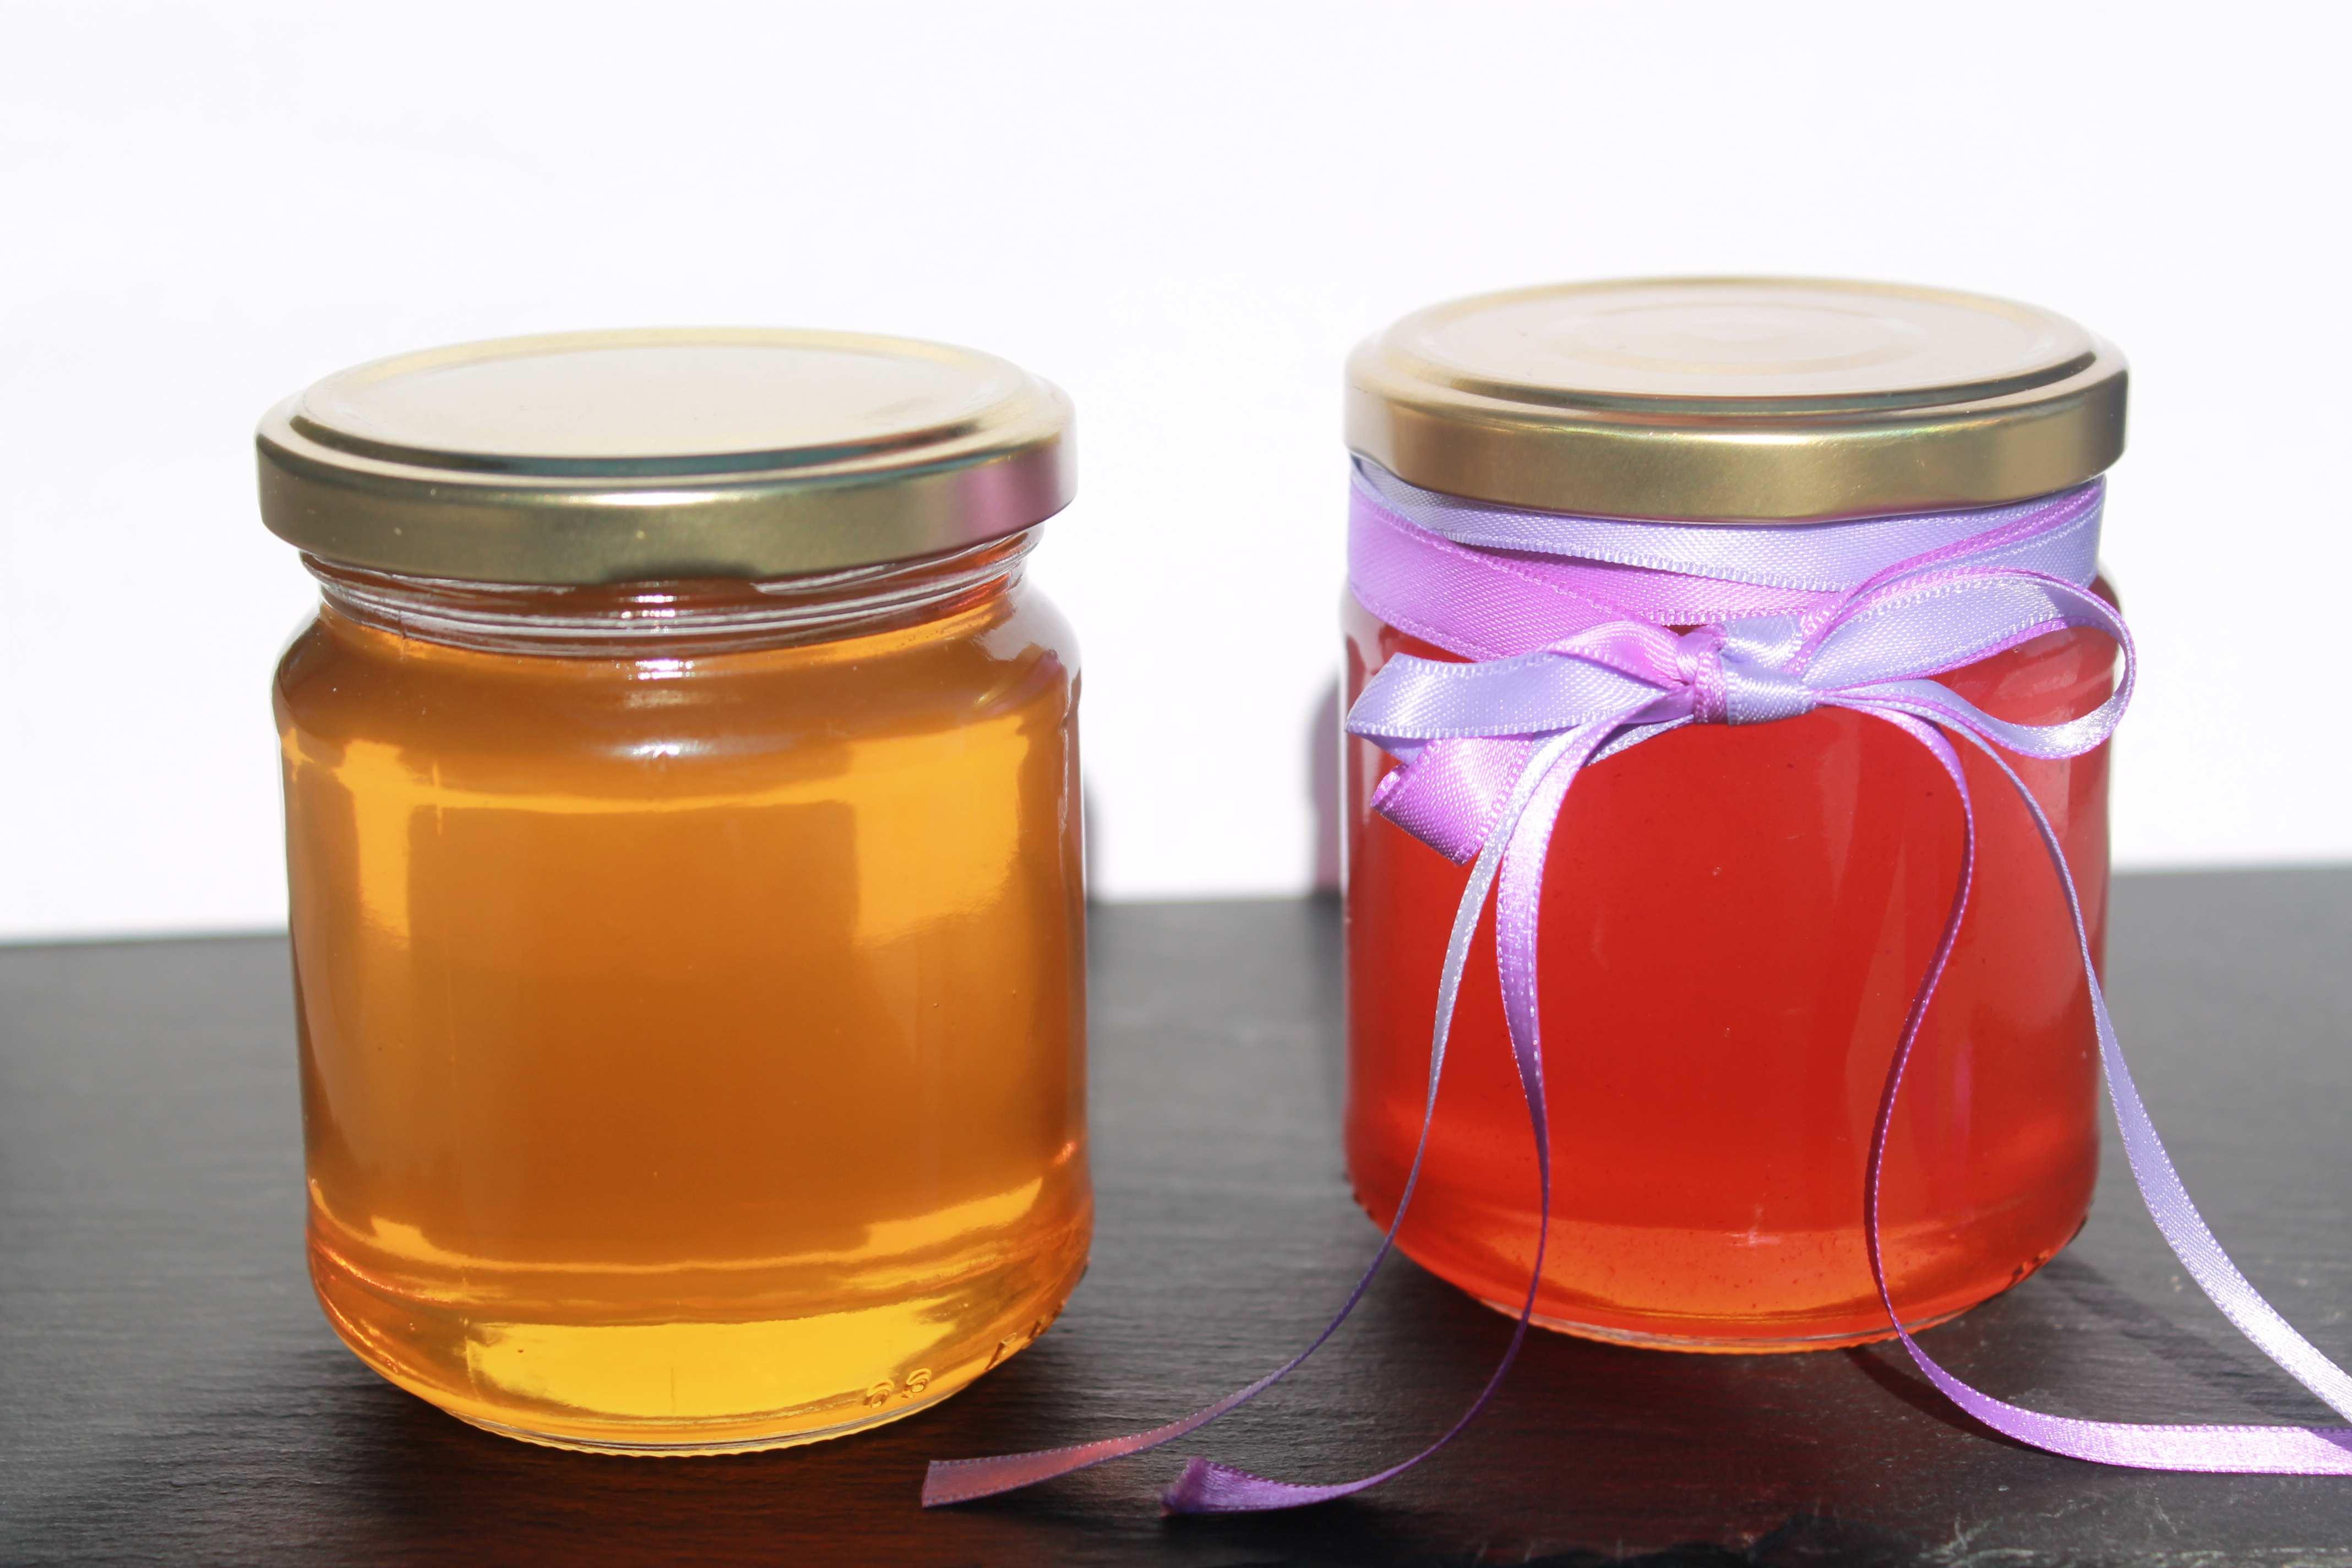 à gauche miel d'acacia, à droite miel parfumé au safran.